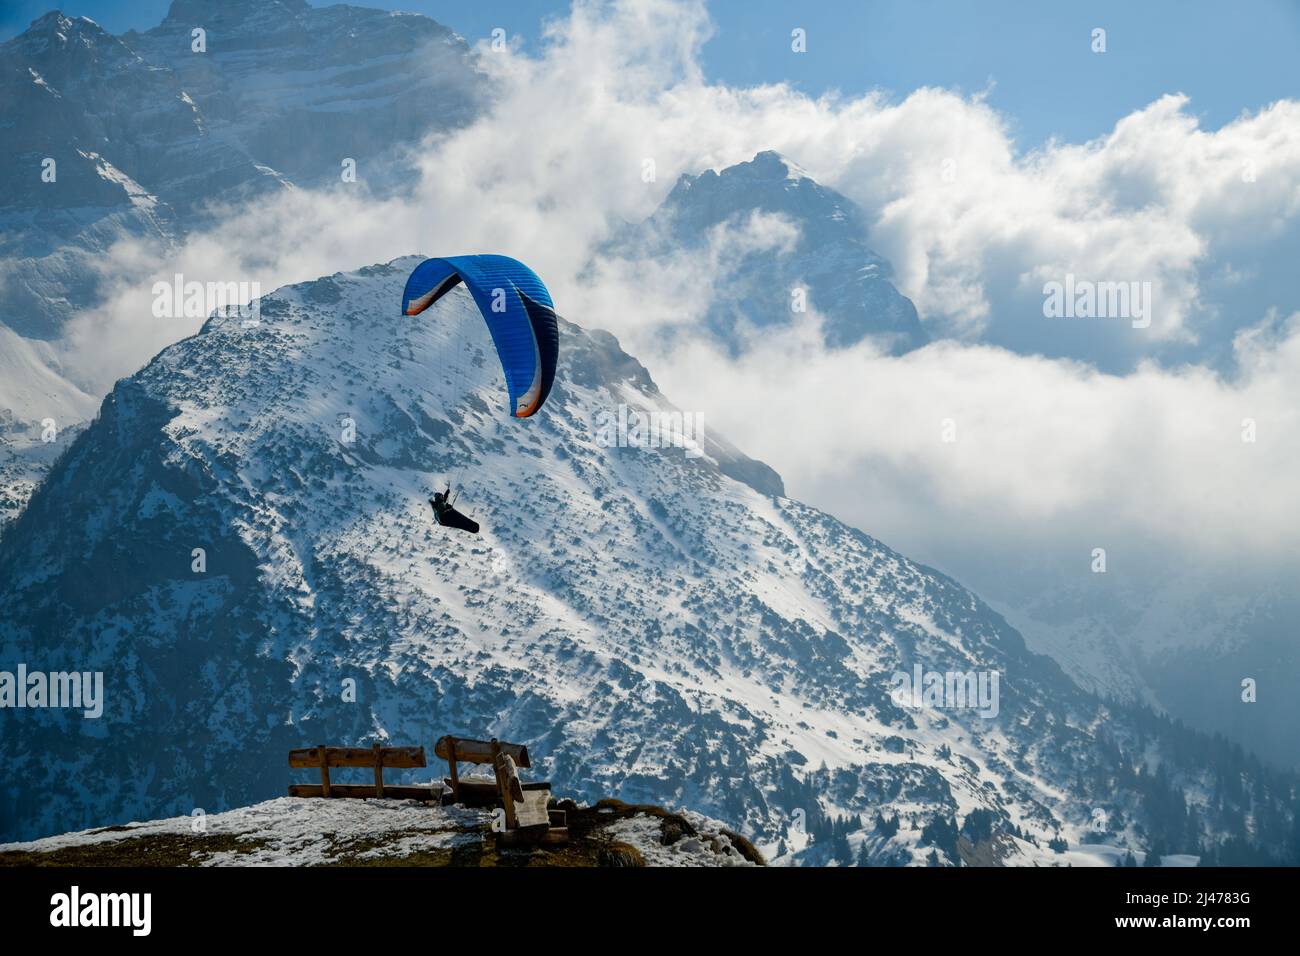 Voli in parapendio presso la stazione sciistica di Pinzolo in Val Rendena in Trentino, nelle Alpi settentrionali italiane. Foto Stock